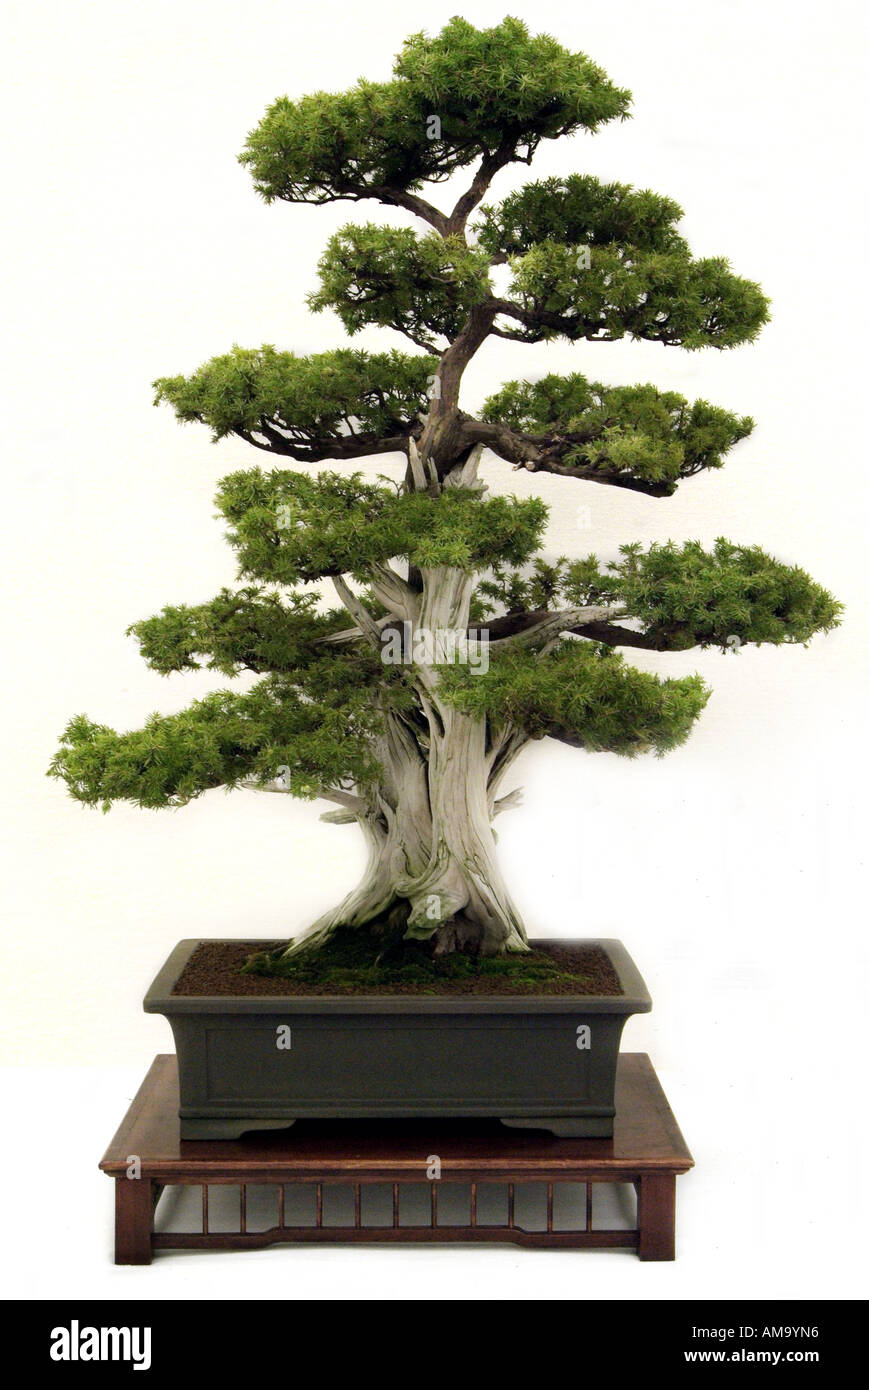 https://c8.alamy.com/compfr/am9yn6/genevrier-bonzai-bonsai-japonais-chinois-chine-japon-orient-orient-oriental-de-l-est-am9yn6.jpg